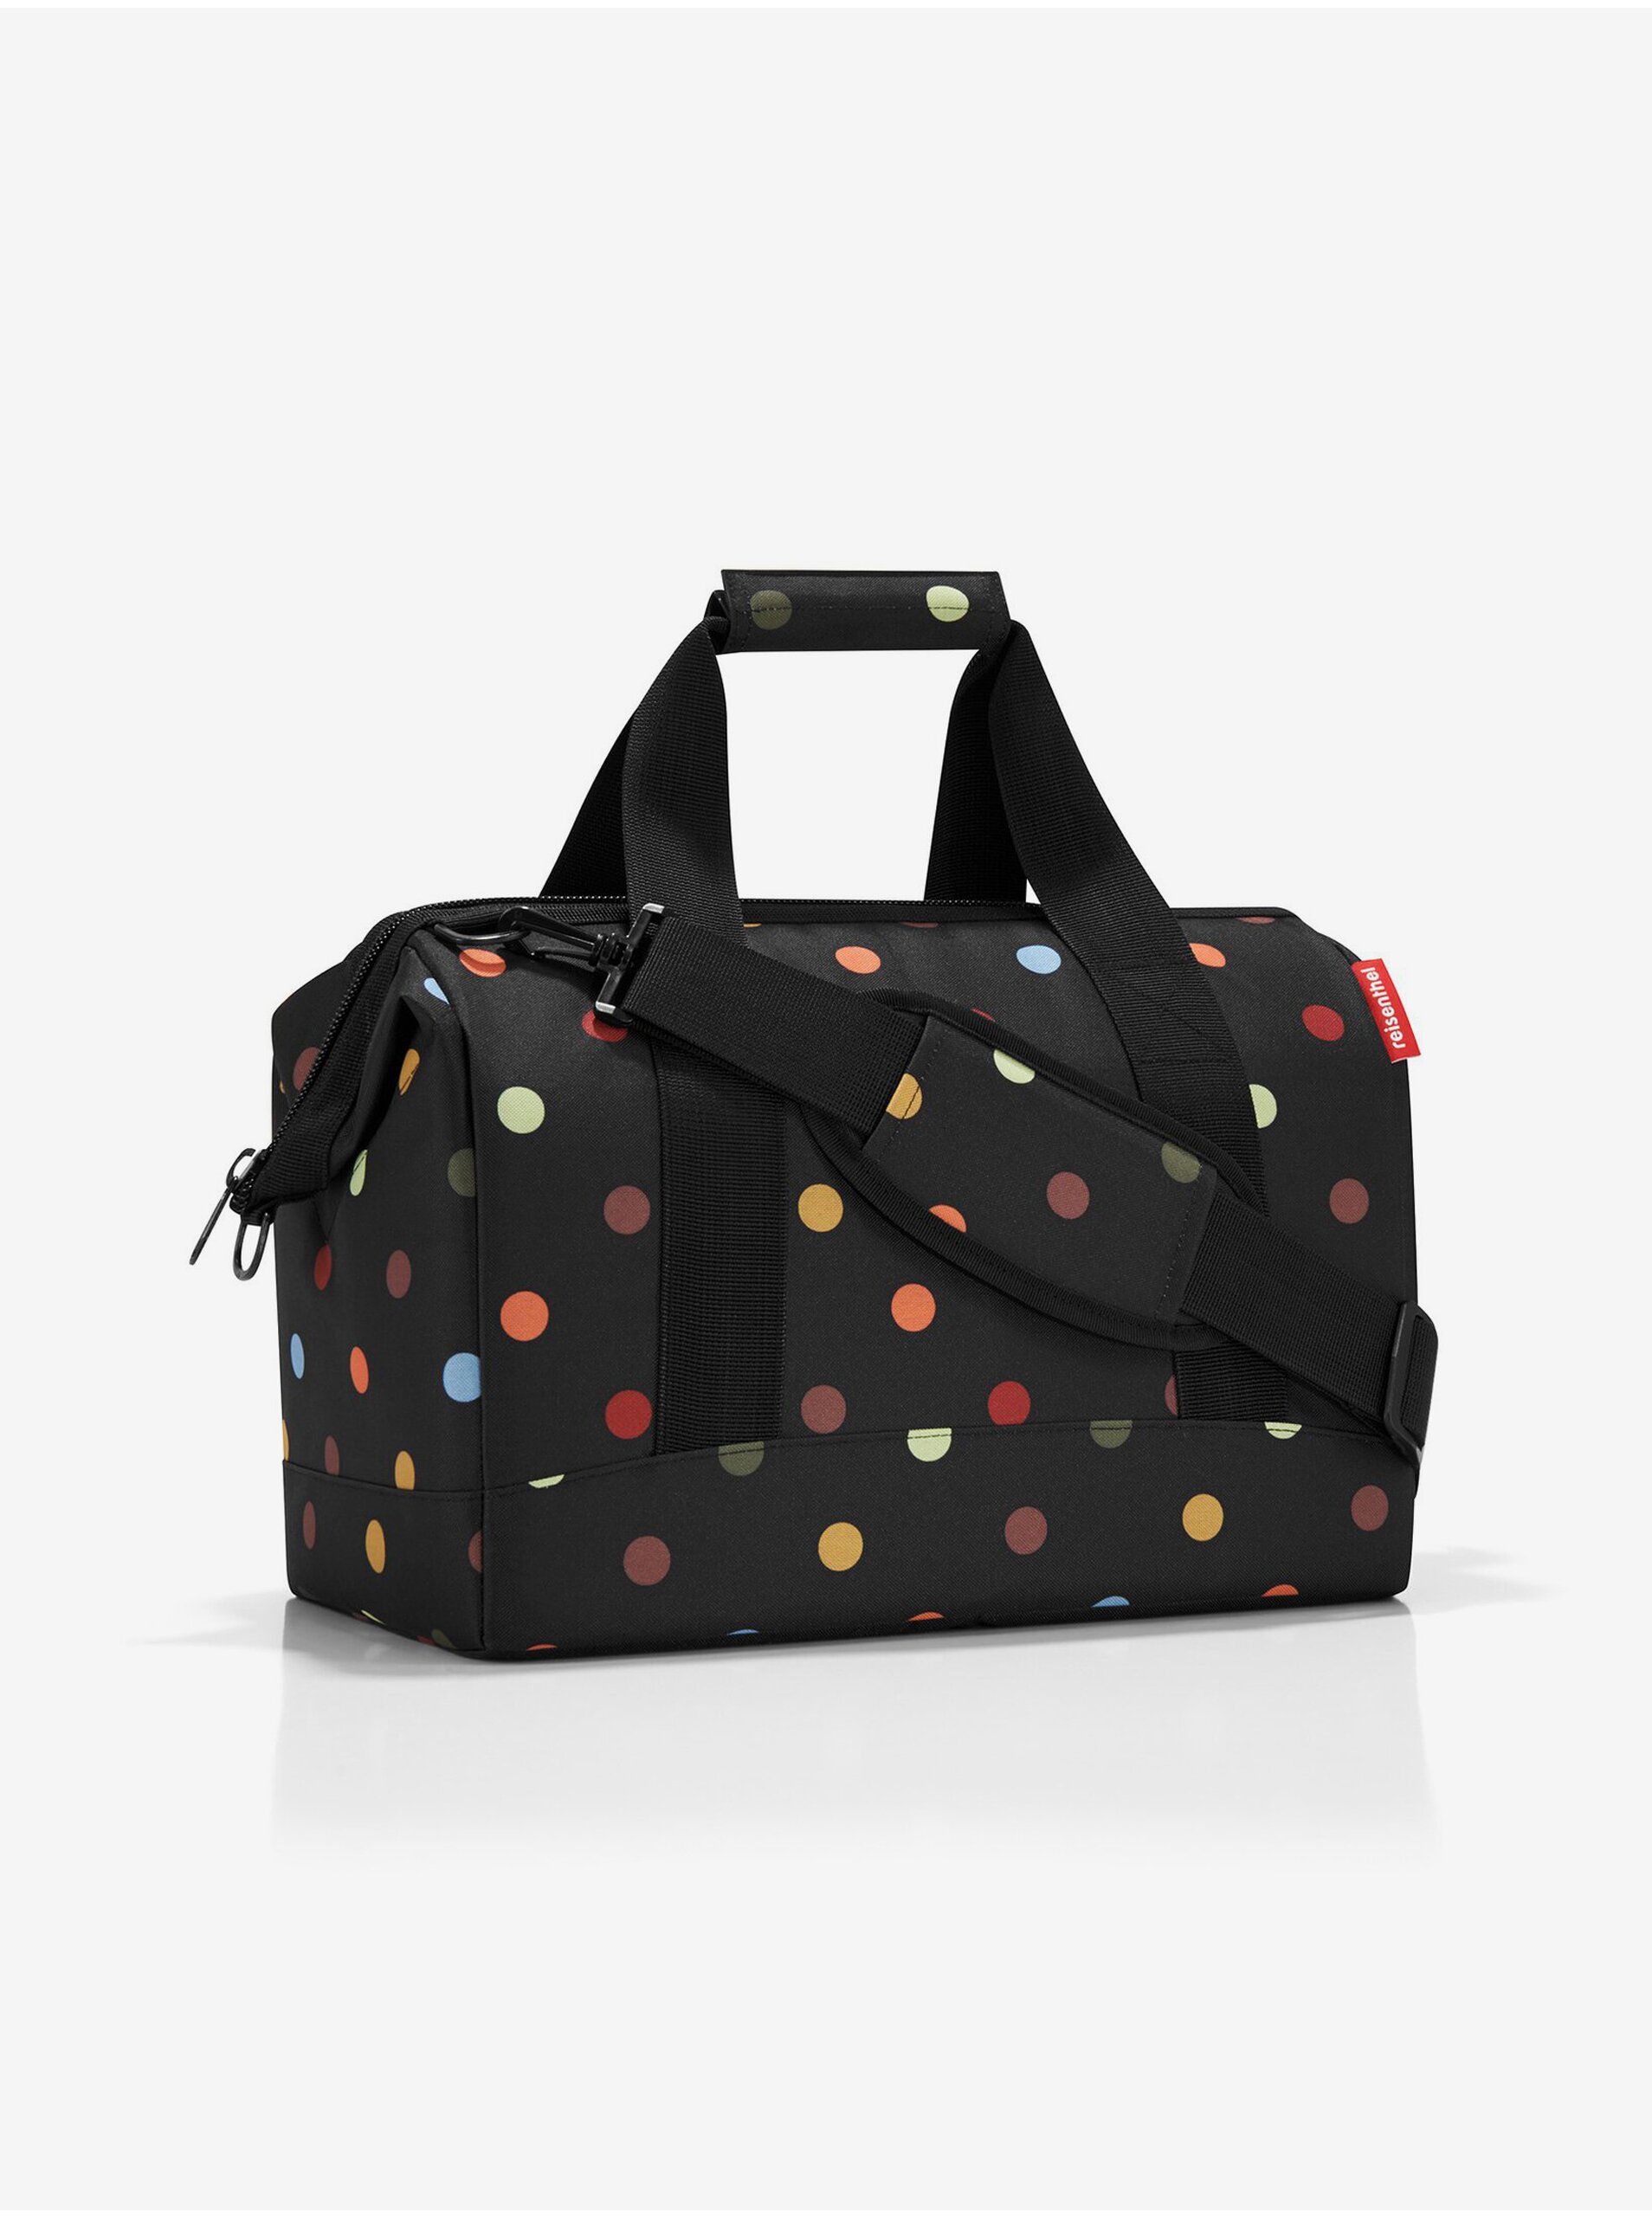 E-shop Černá puntíkovaná cestovní taška Reisenthel Allrounder M Dots